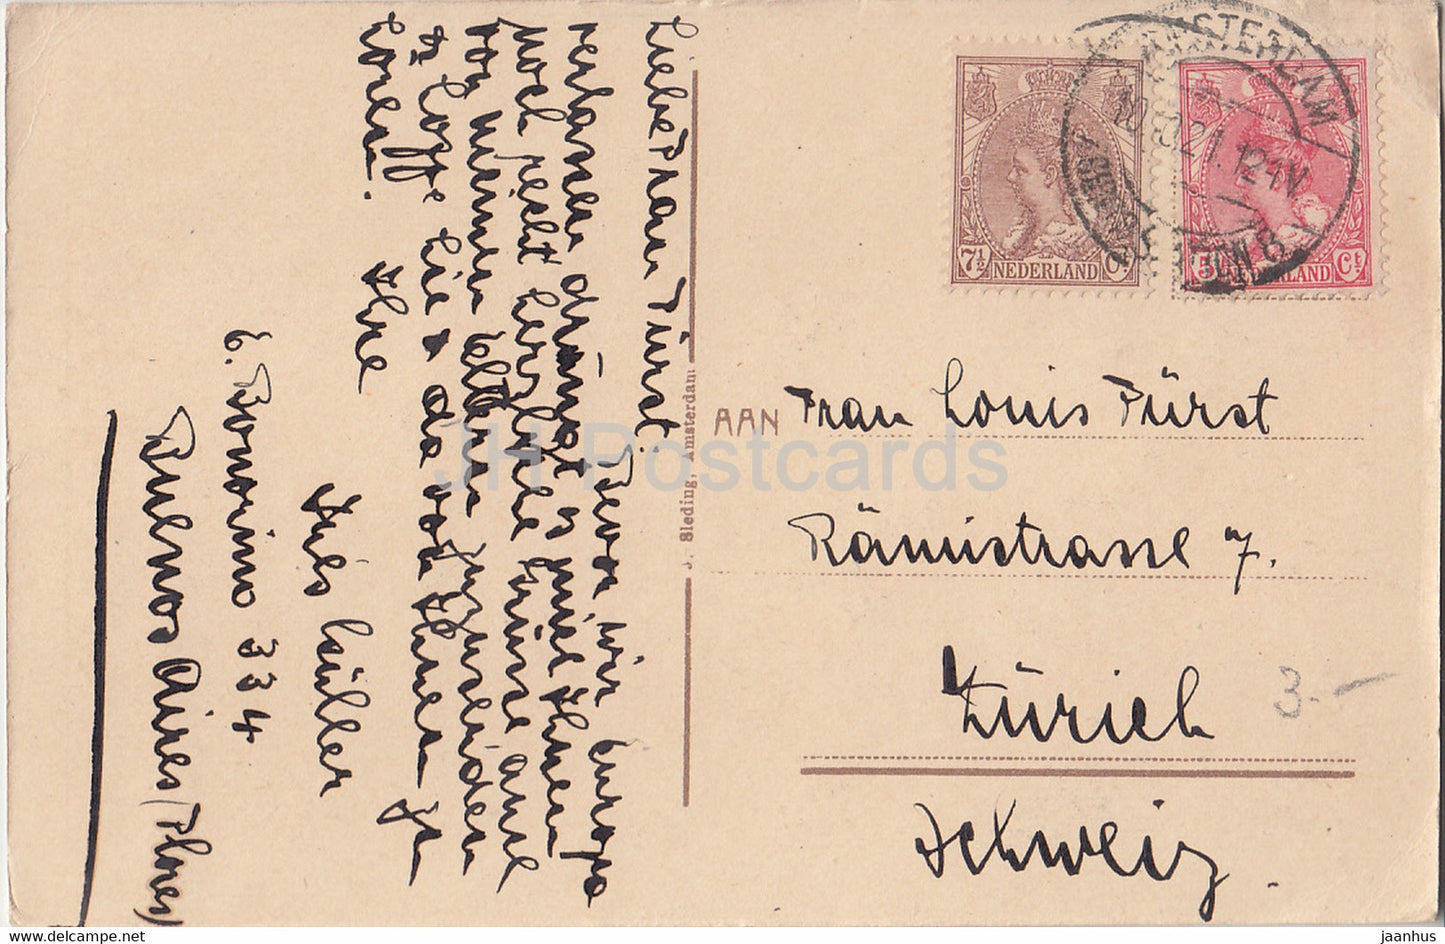 Amsterdam - Singel - Boot - alte Postkarte - 1921 - Niederlande - gebraucht